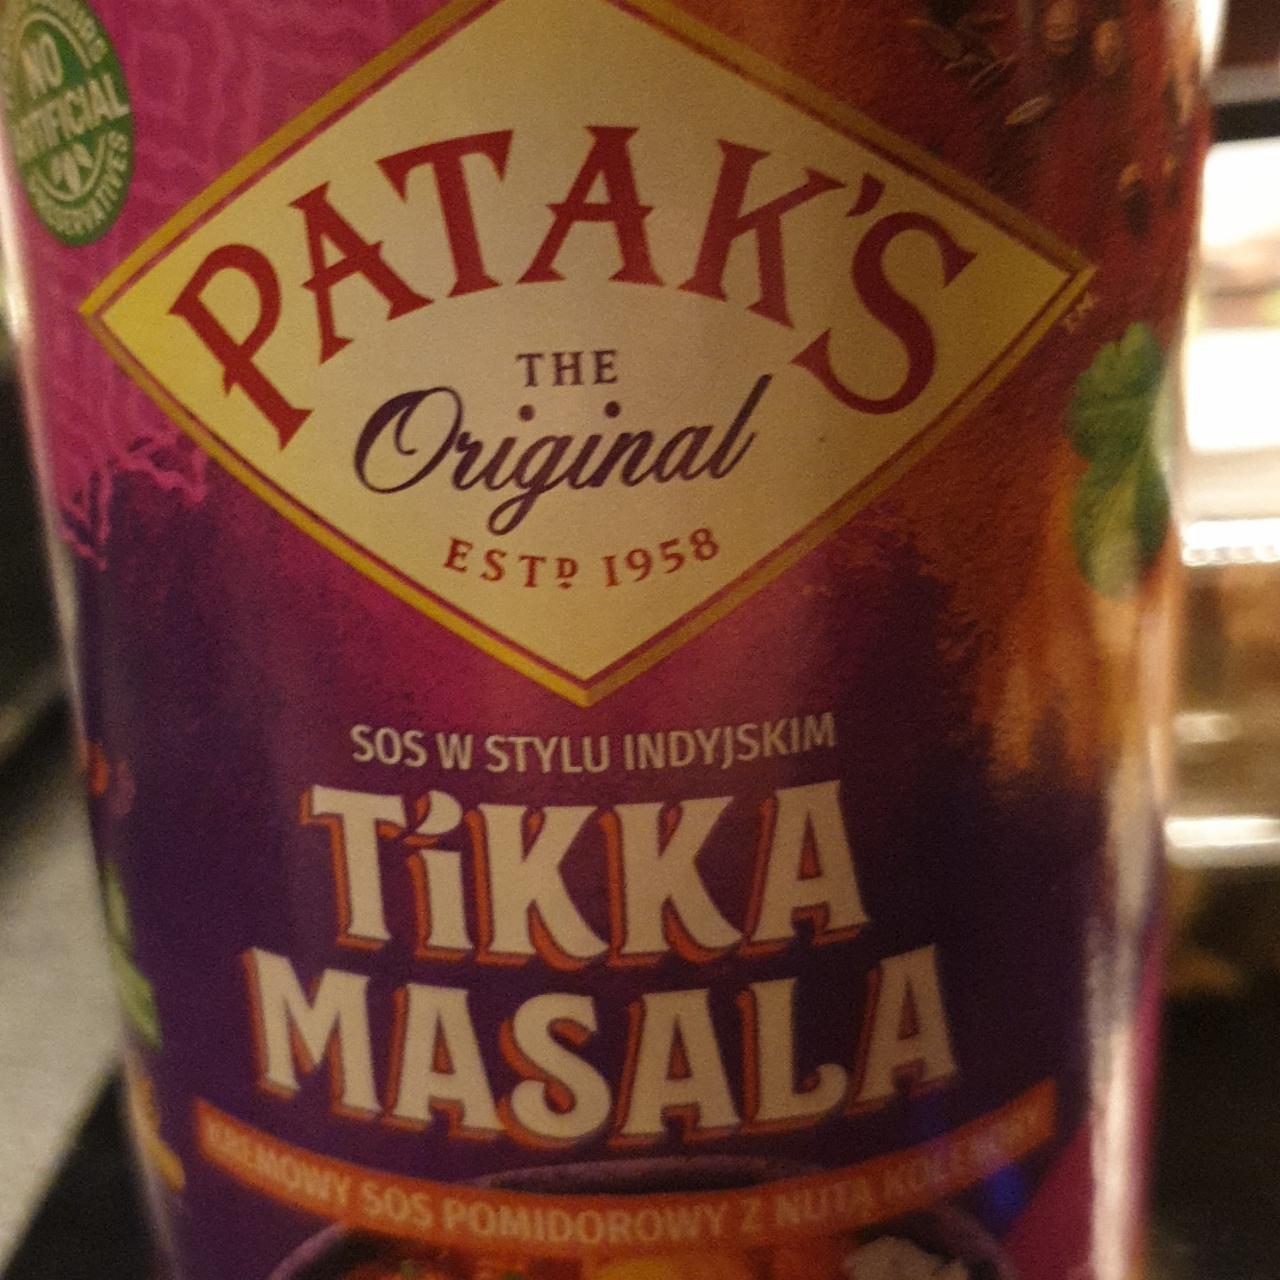 Fotografie - Tikka masala kremowy sos pomidorowy z nutą kolendry Patak's